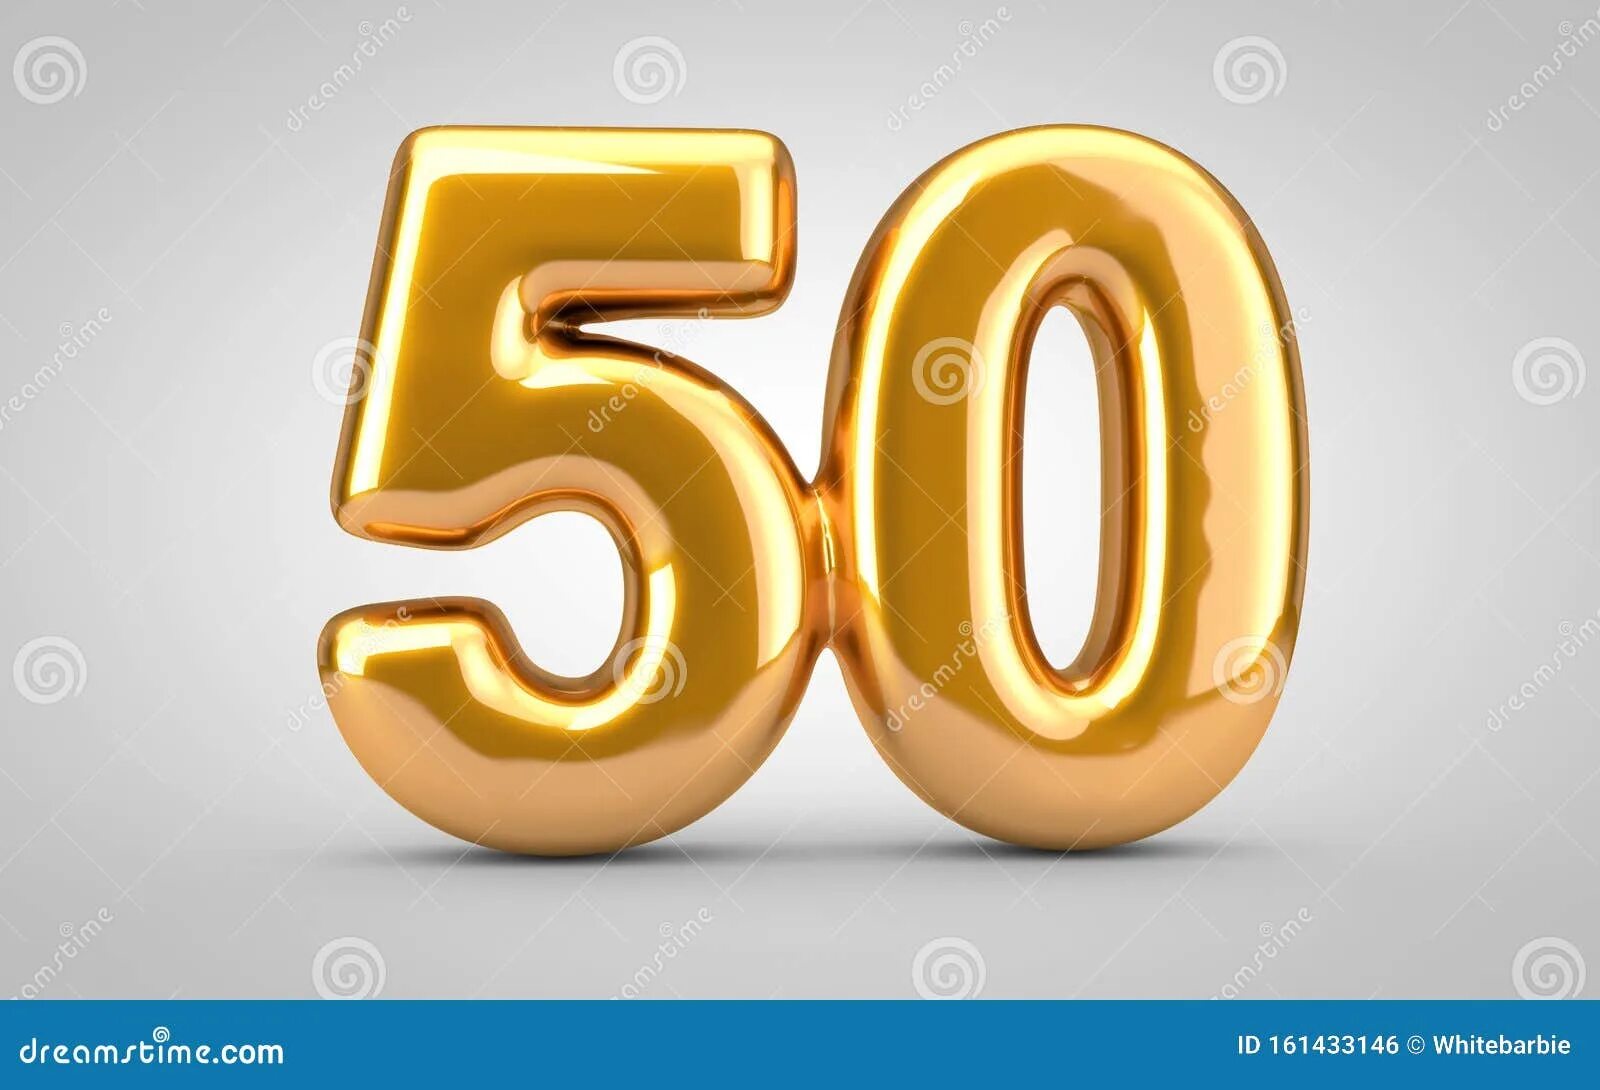 30 50 новый год. 50 Число для фотошопа золотое. 50 (Число). Номер 50. 50 Это новые 30.